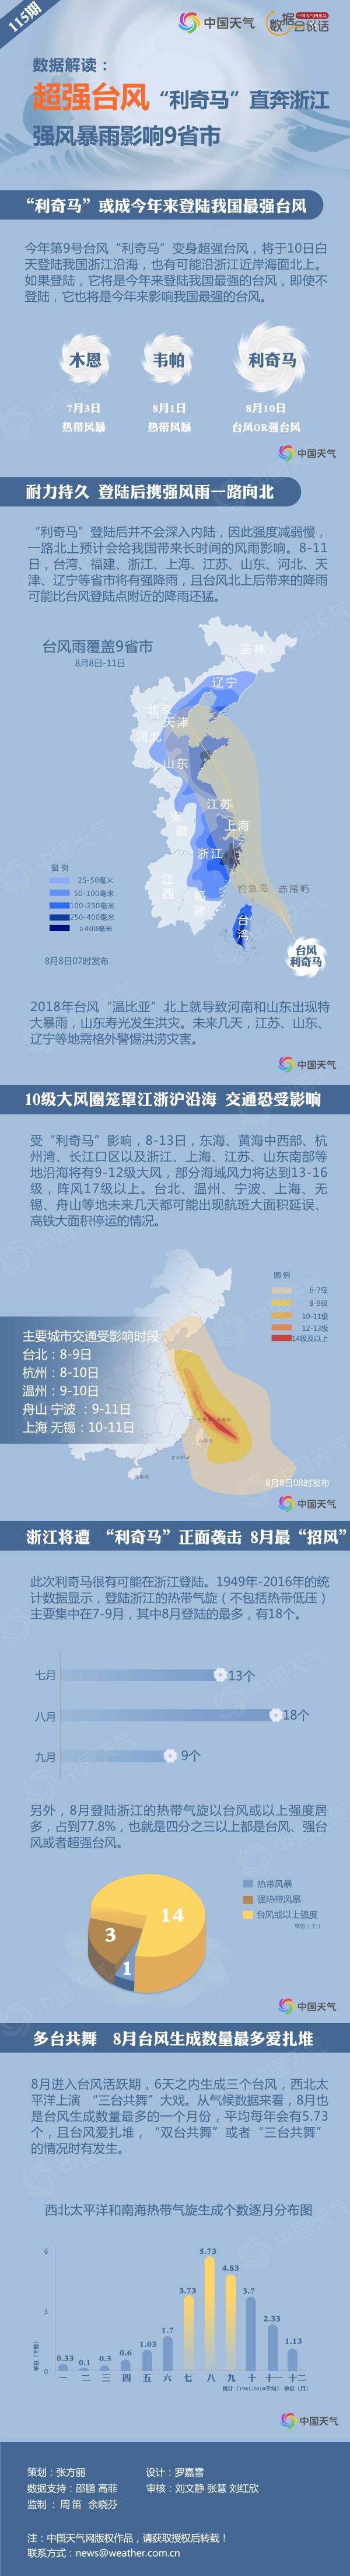 数据解读：“利奇马”成今年风王 强风暴雨将影响9省市-资讯-中国天气网